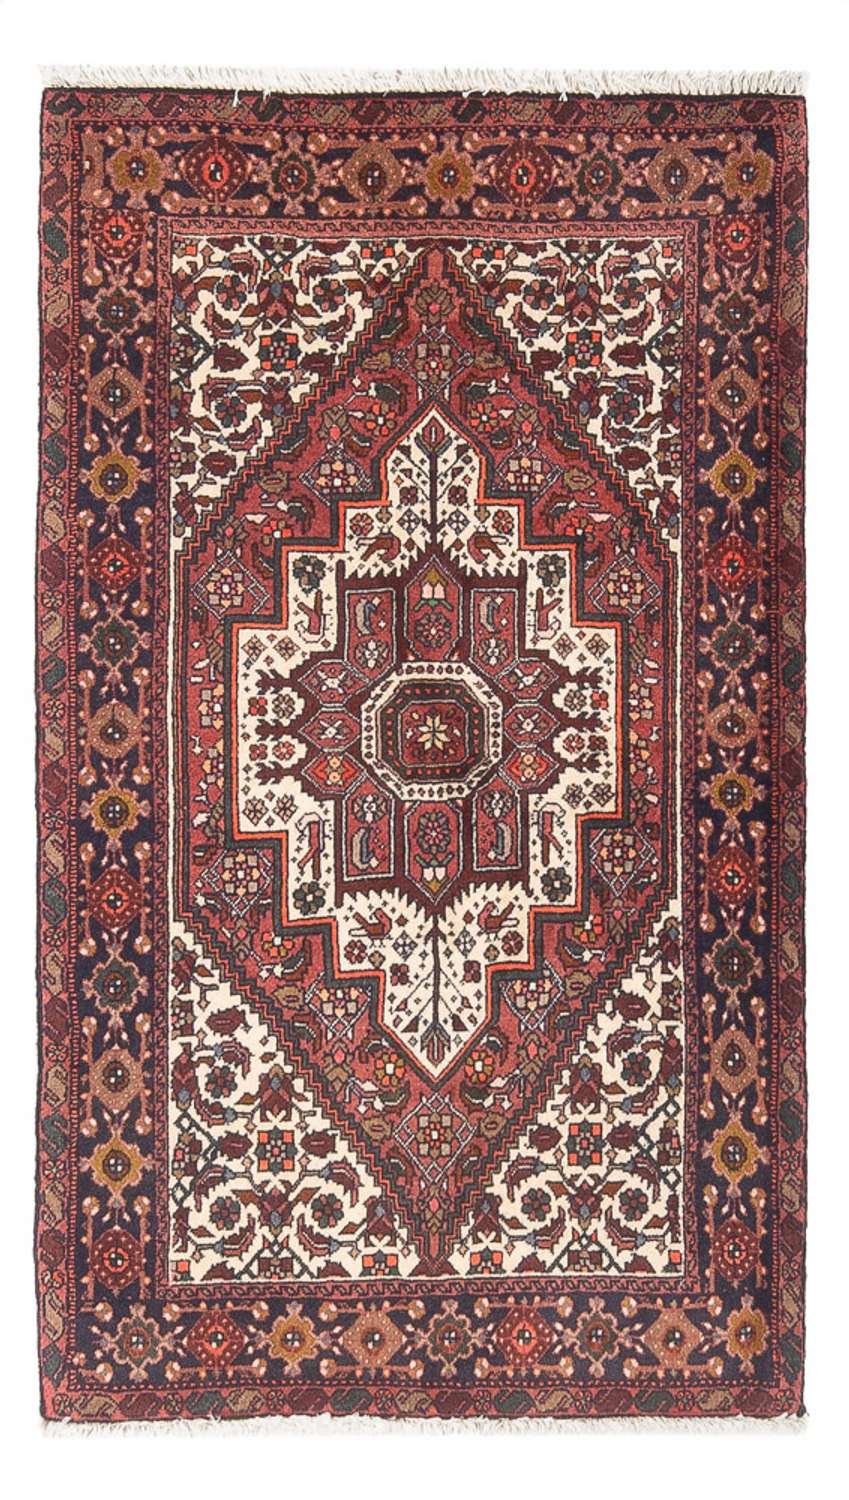 Persisk teppe - Nomadisk - 130 x 82 cm - krem